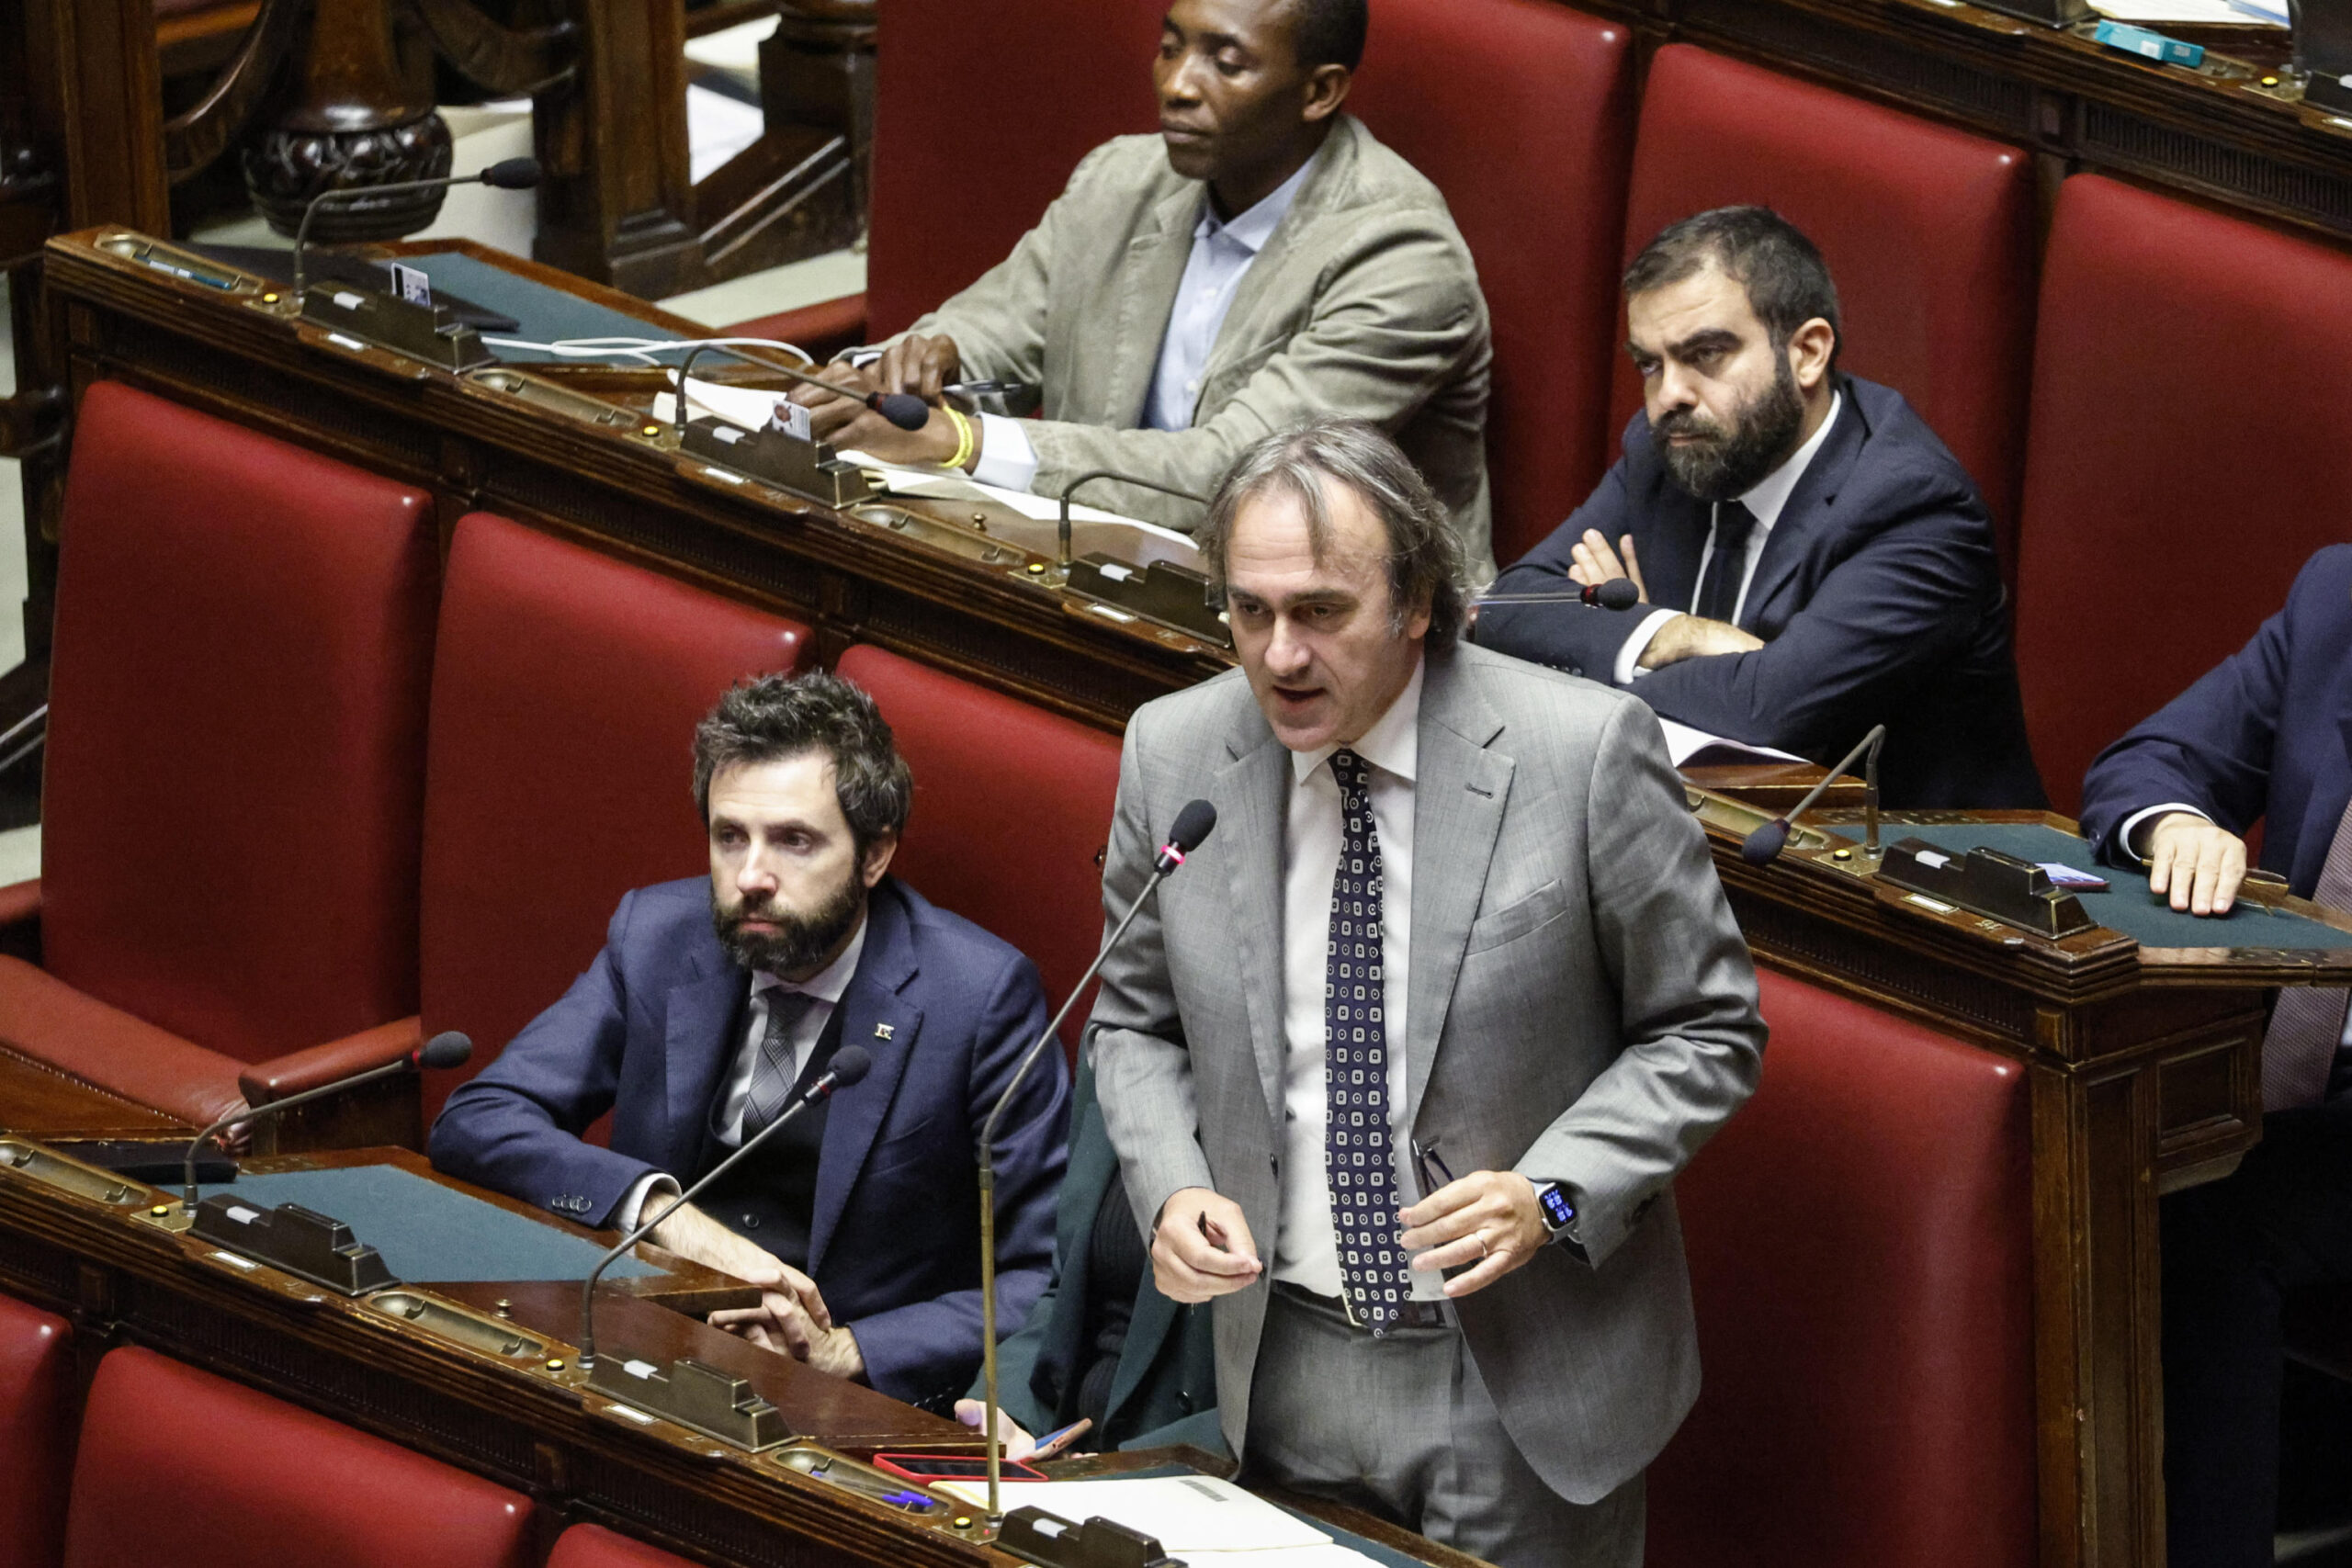 Ponte sullo Stretto, Bonelli denuncia: "La Lega vuole mandare in carcere chi protesta, è una svolta autoritaria"